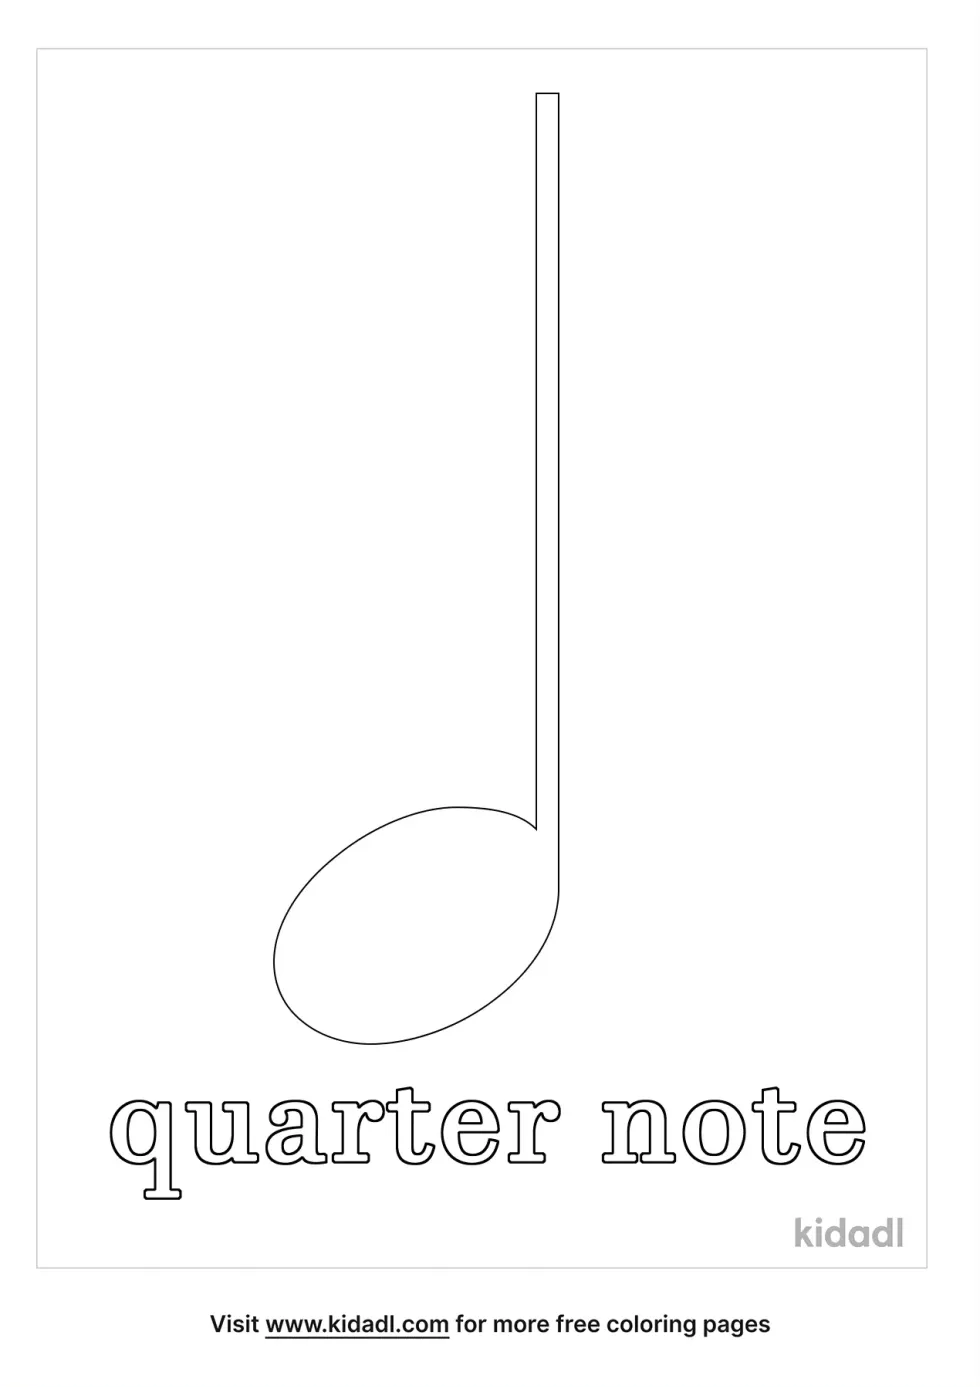 Quarter Note